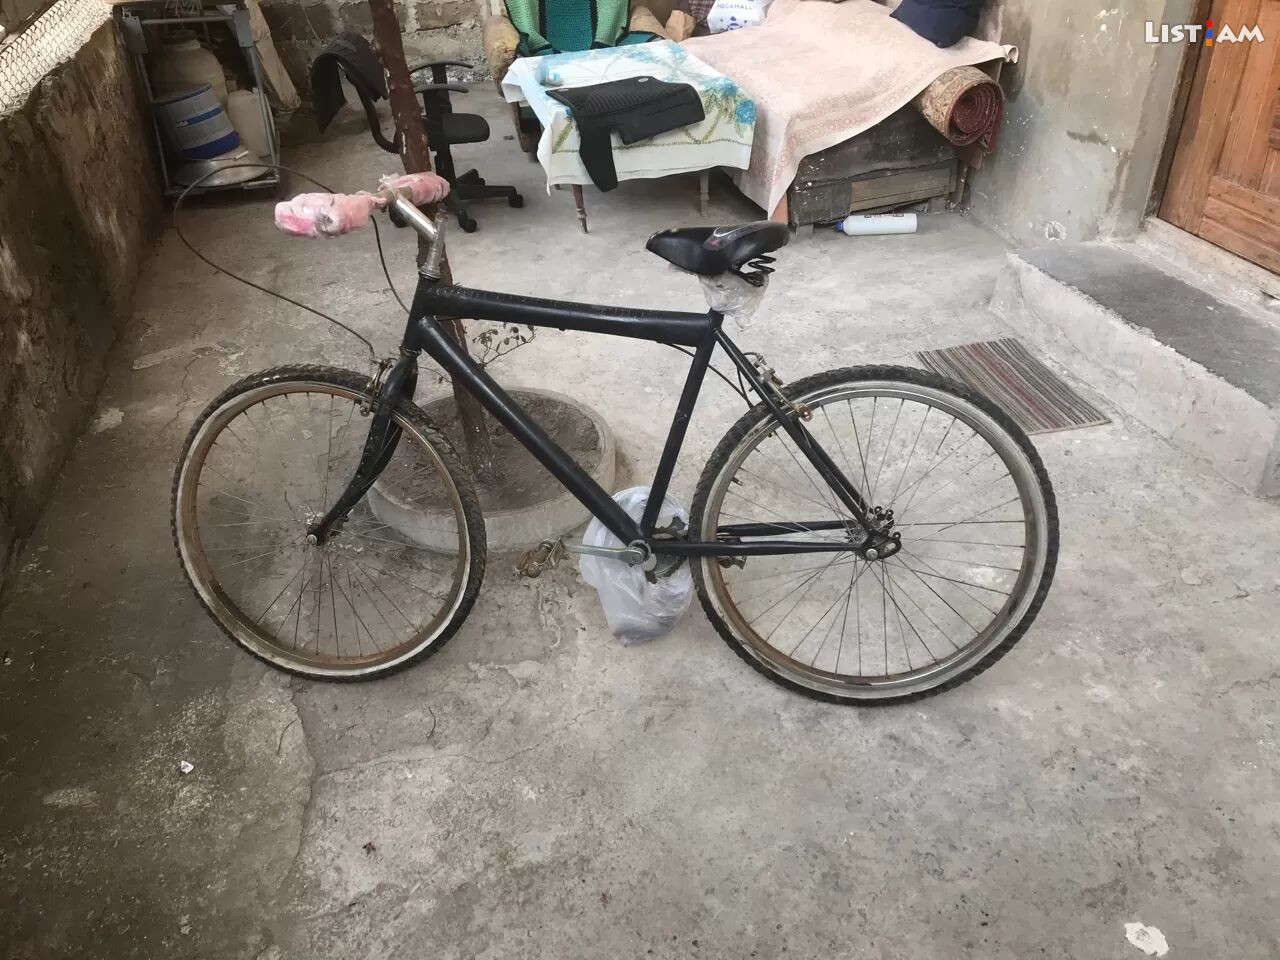 Հեծանիվ